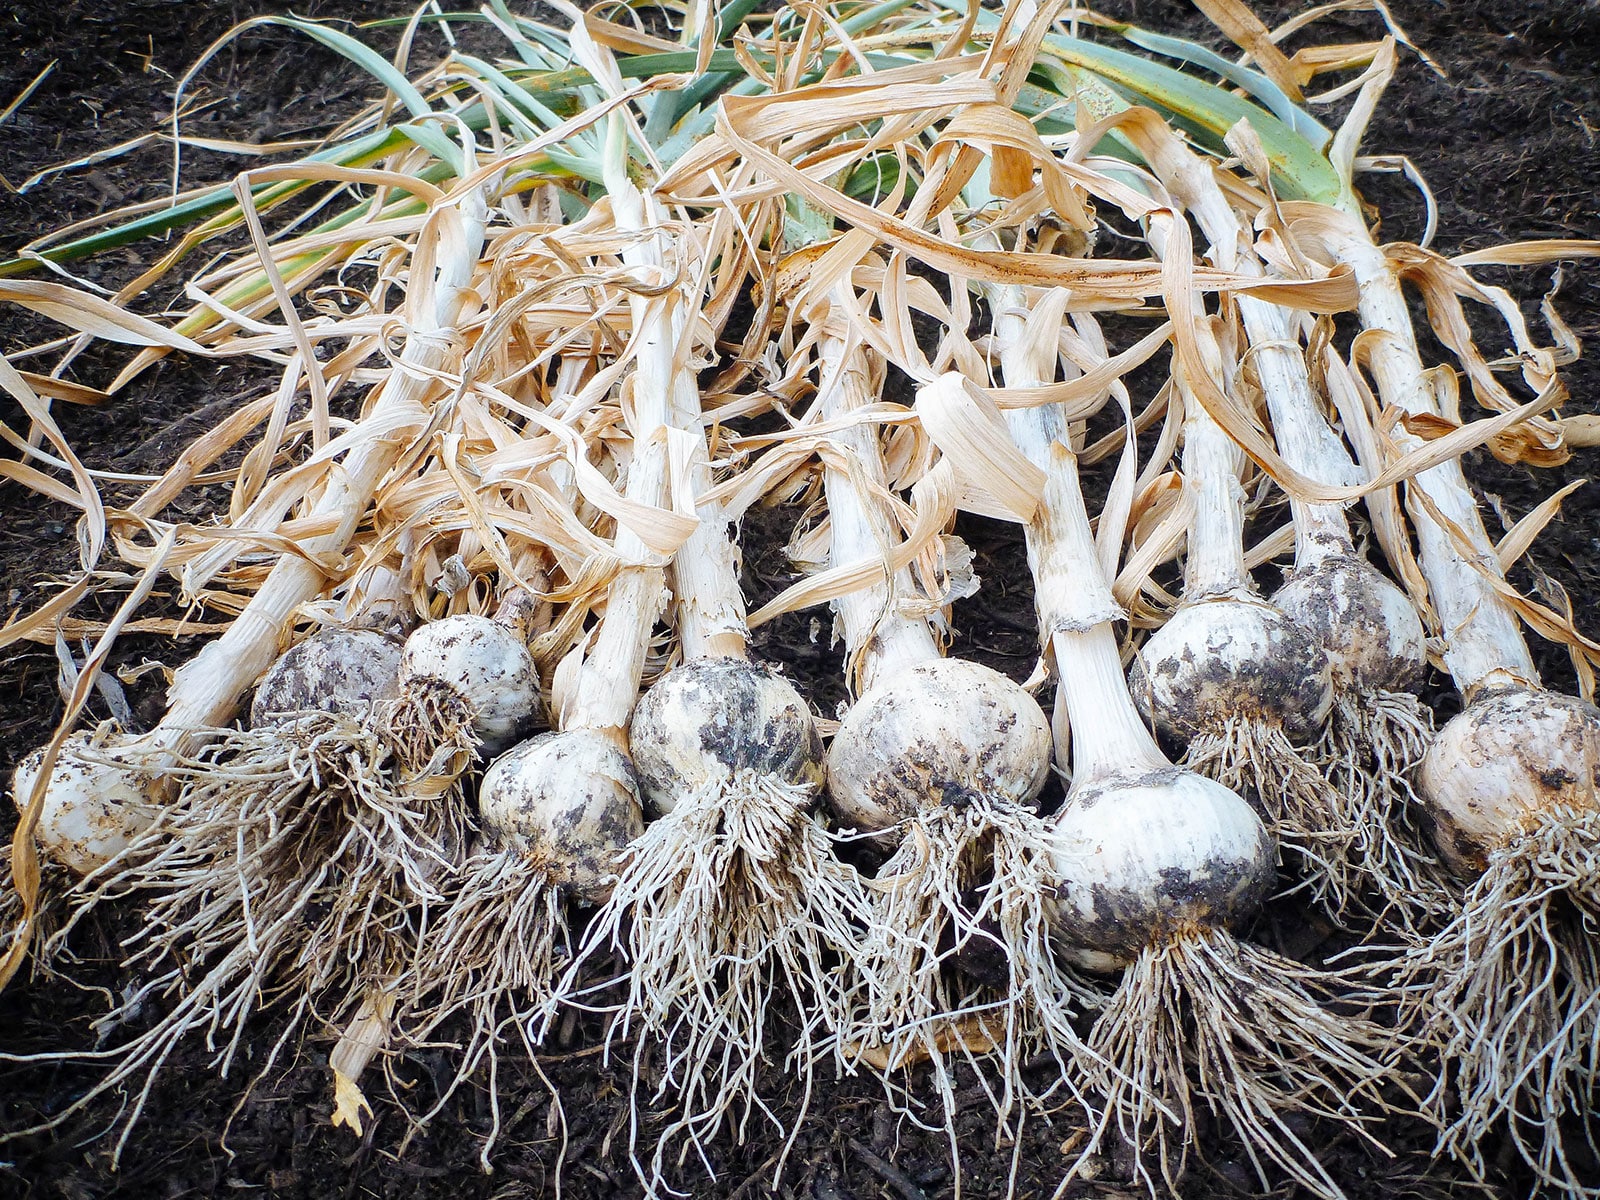 Homegrown garlic being cured in the garden on mulch